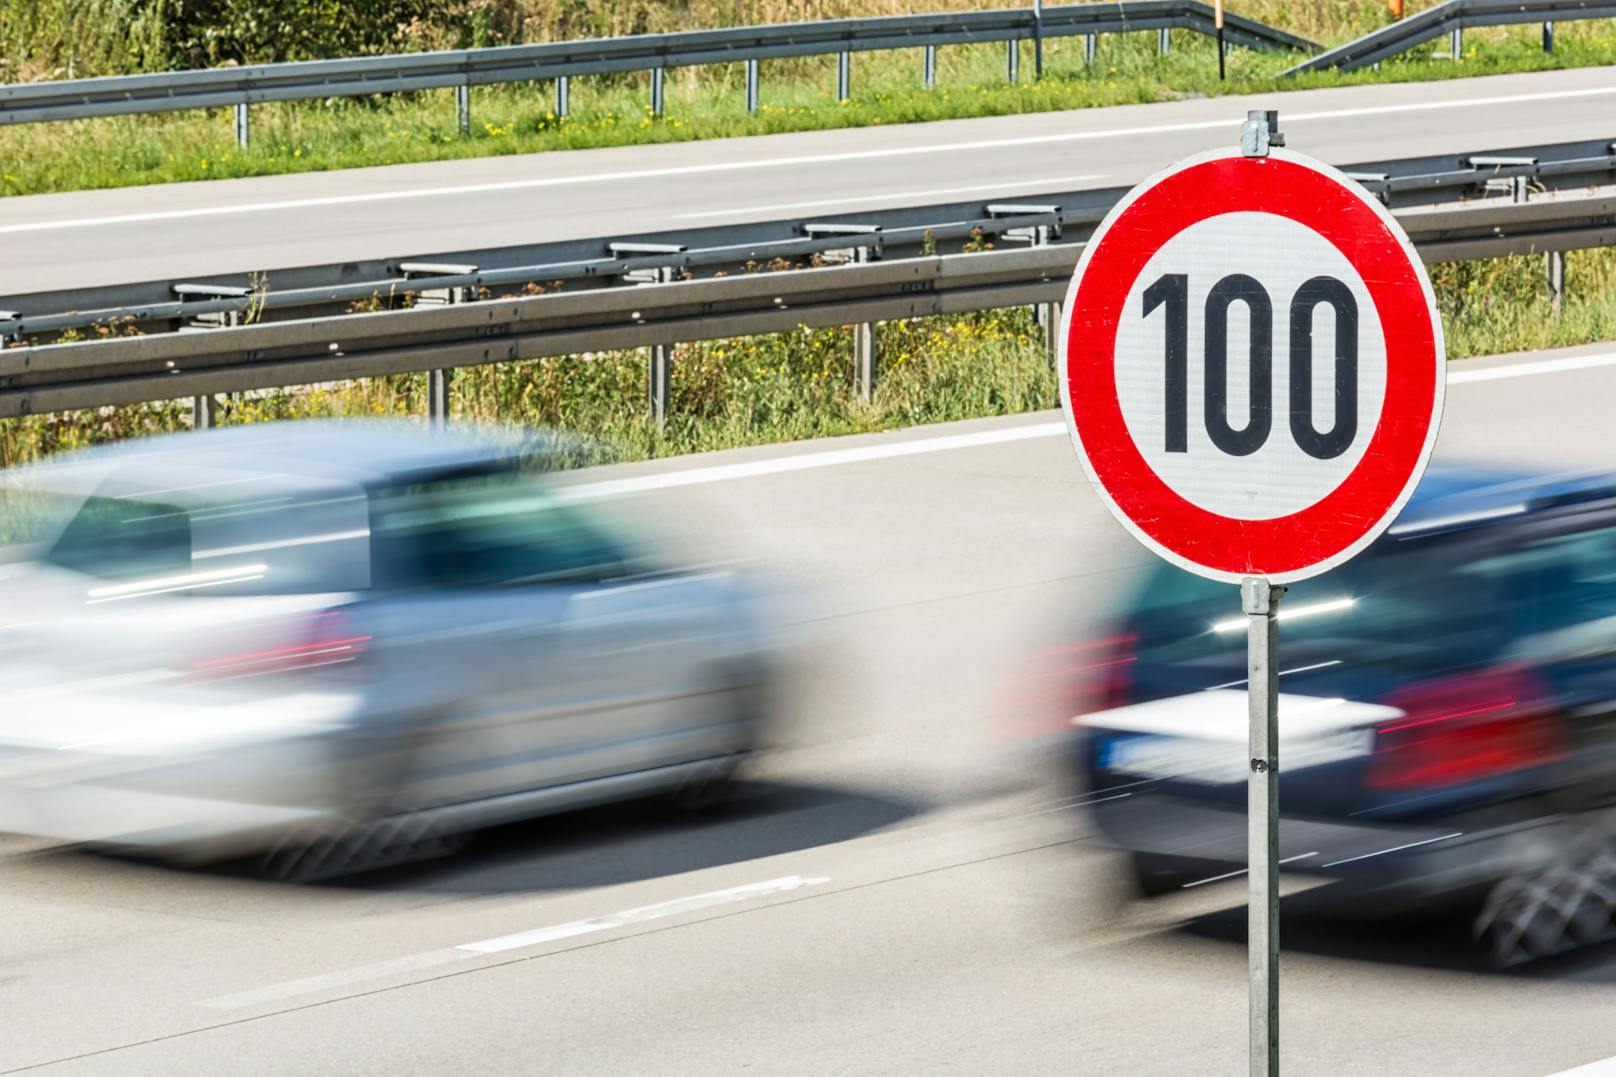 19-Jähriger bretterte mit 210 km/h über die Autobahn